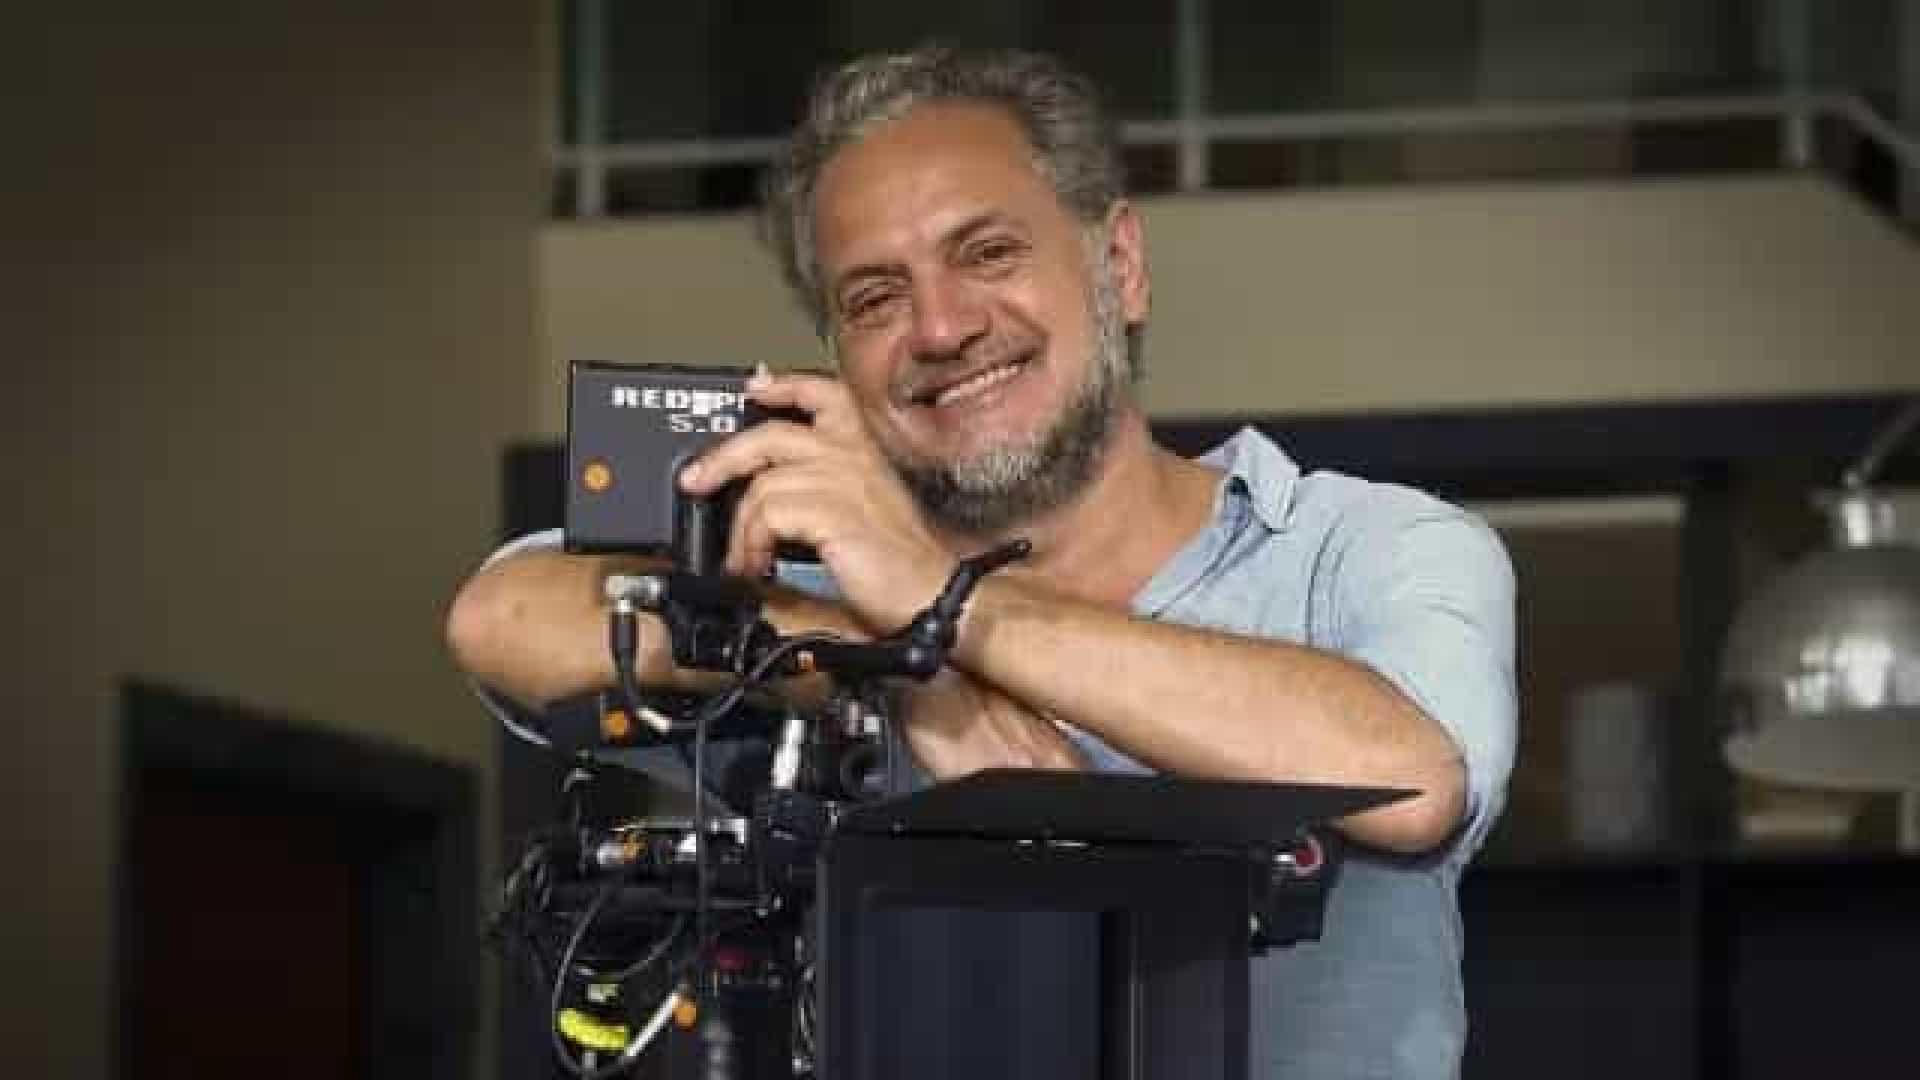 Renomado cineasta brasileiro morre de infarto em set, aos 58 anos; vídeo mostra última cena dirigida por ele